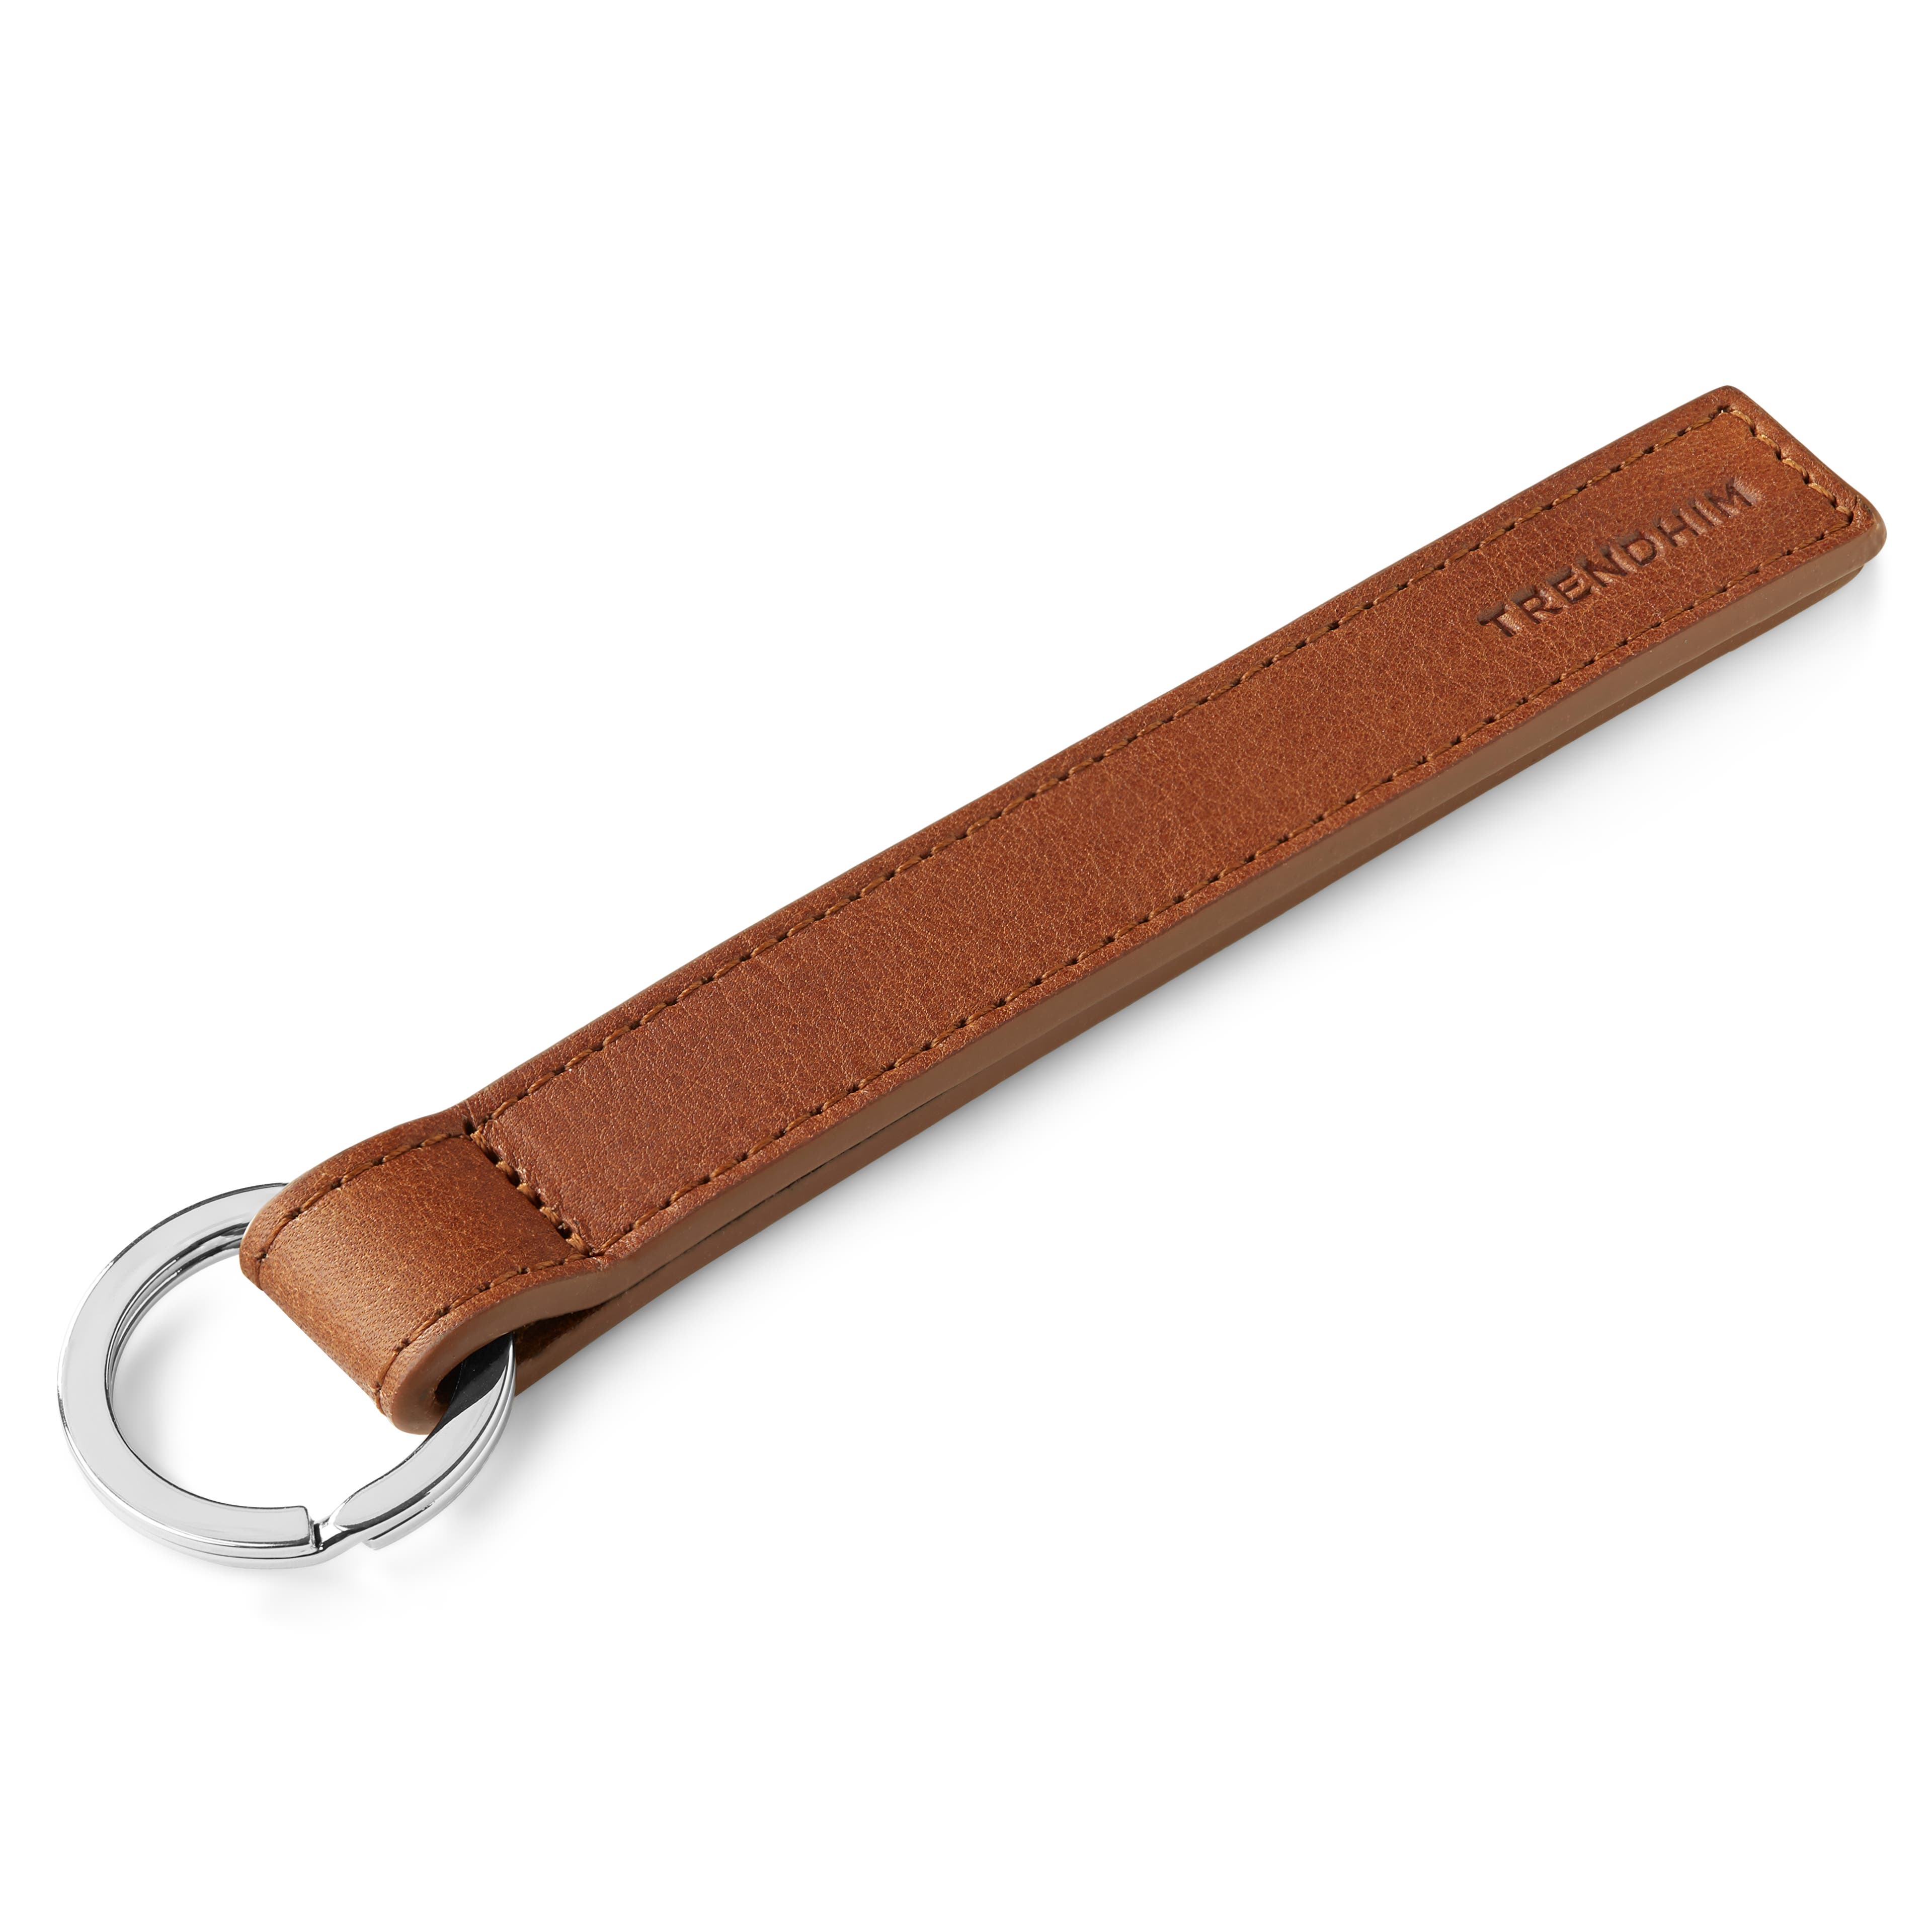 Porte-clés en cuir marron clair à boucle métallique 